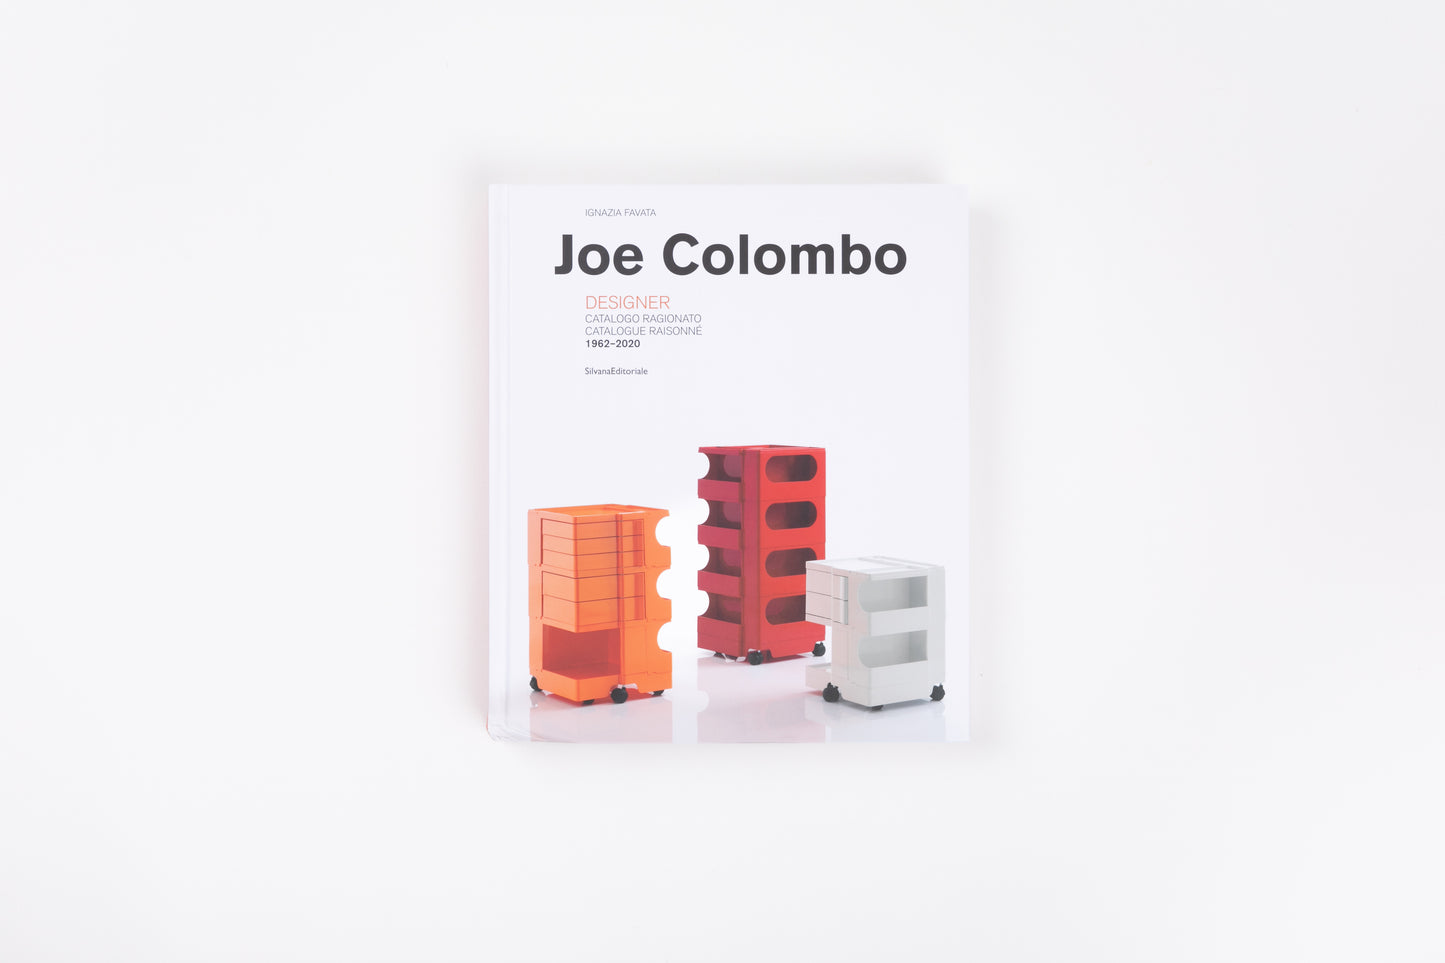 Designer. Catalogue Raisonné 1962-2020